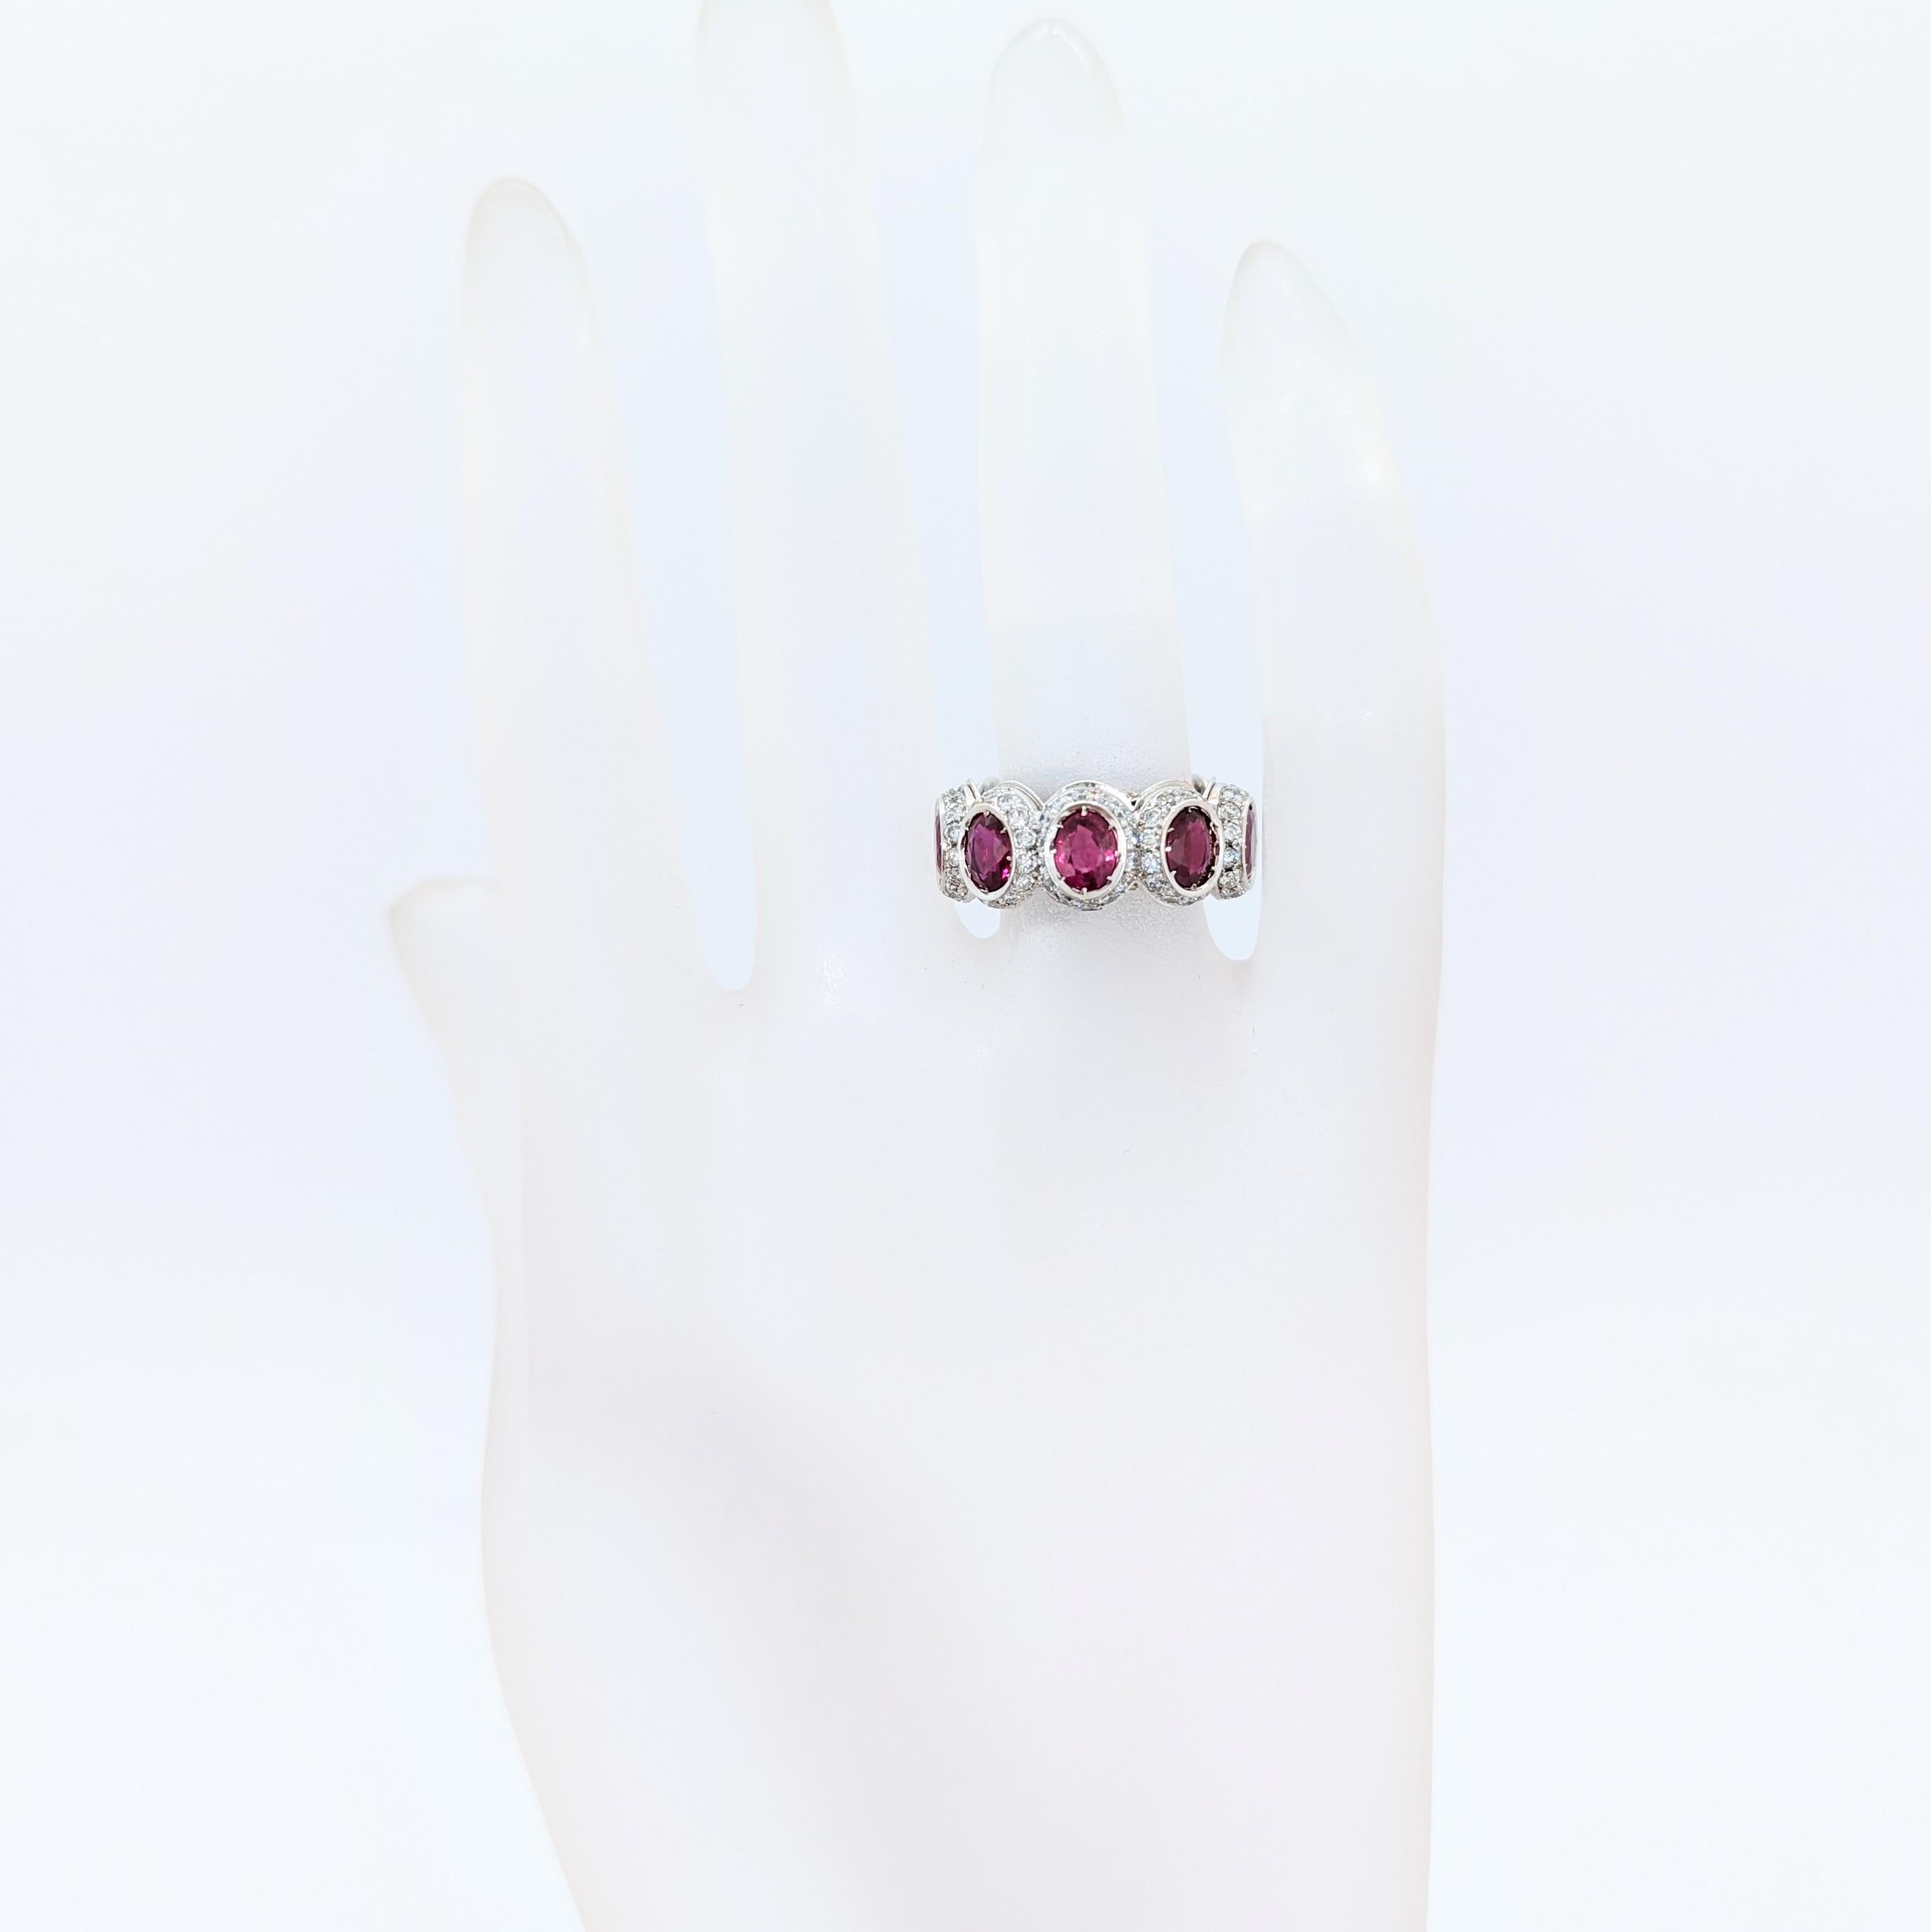 Wunderschöner ovaler 5,50-karätiger Rubin mit 1,85-karätigem weißen Diamanten von guter Qualität.  Handgefertigt aus 18 Karat Weißgold.  Ringgröße 5,75.